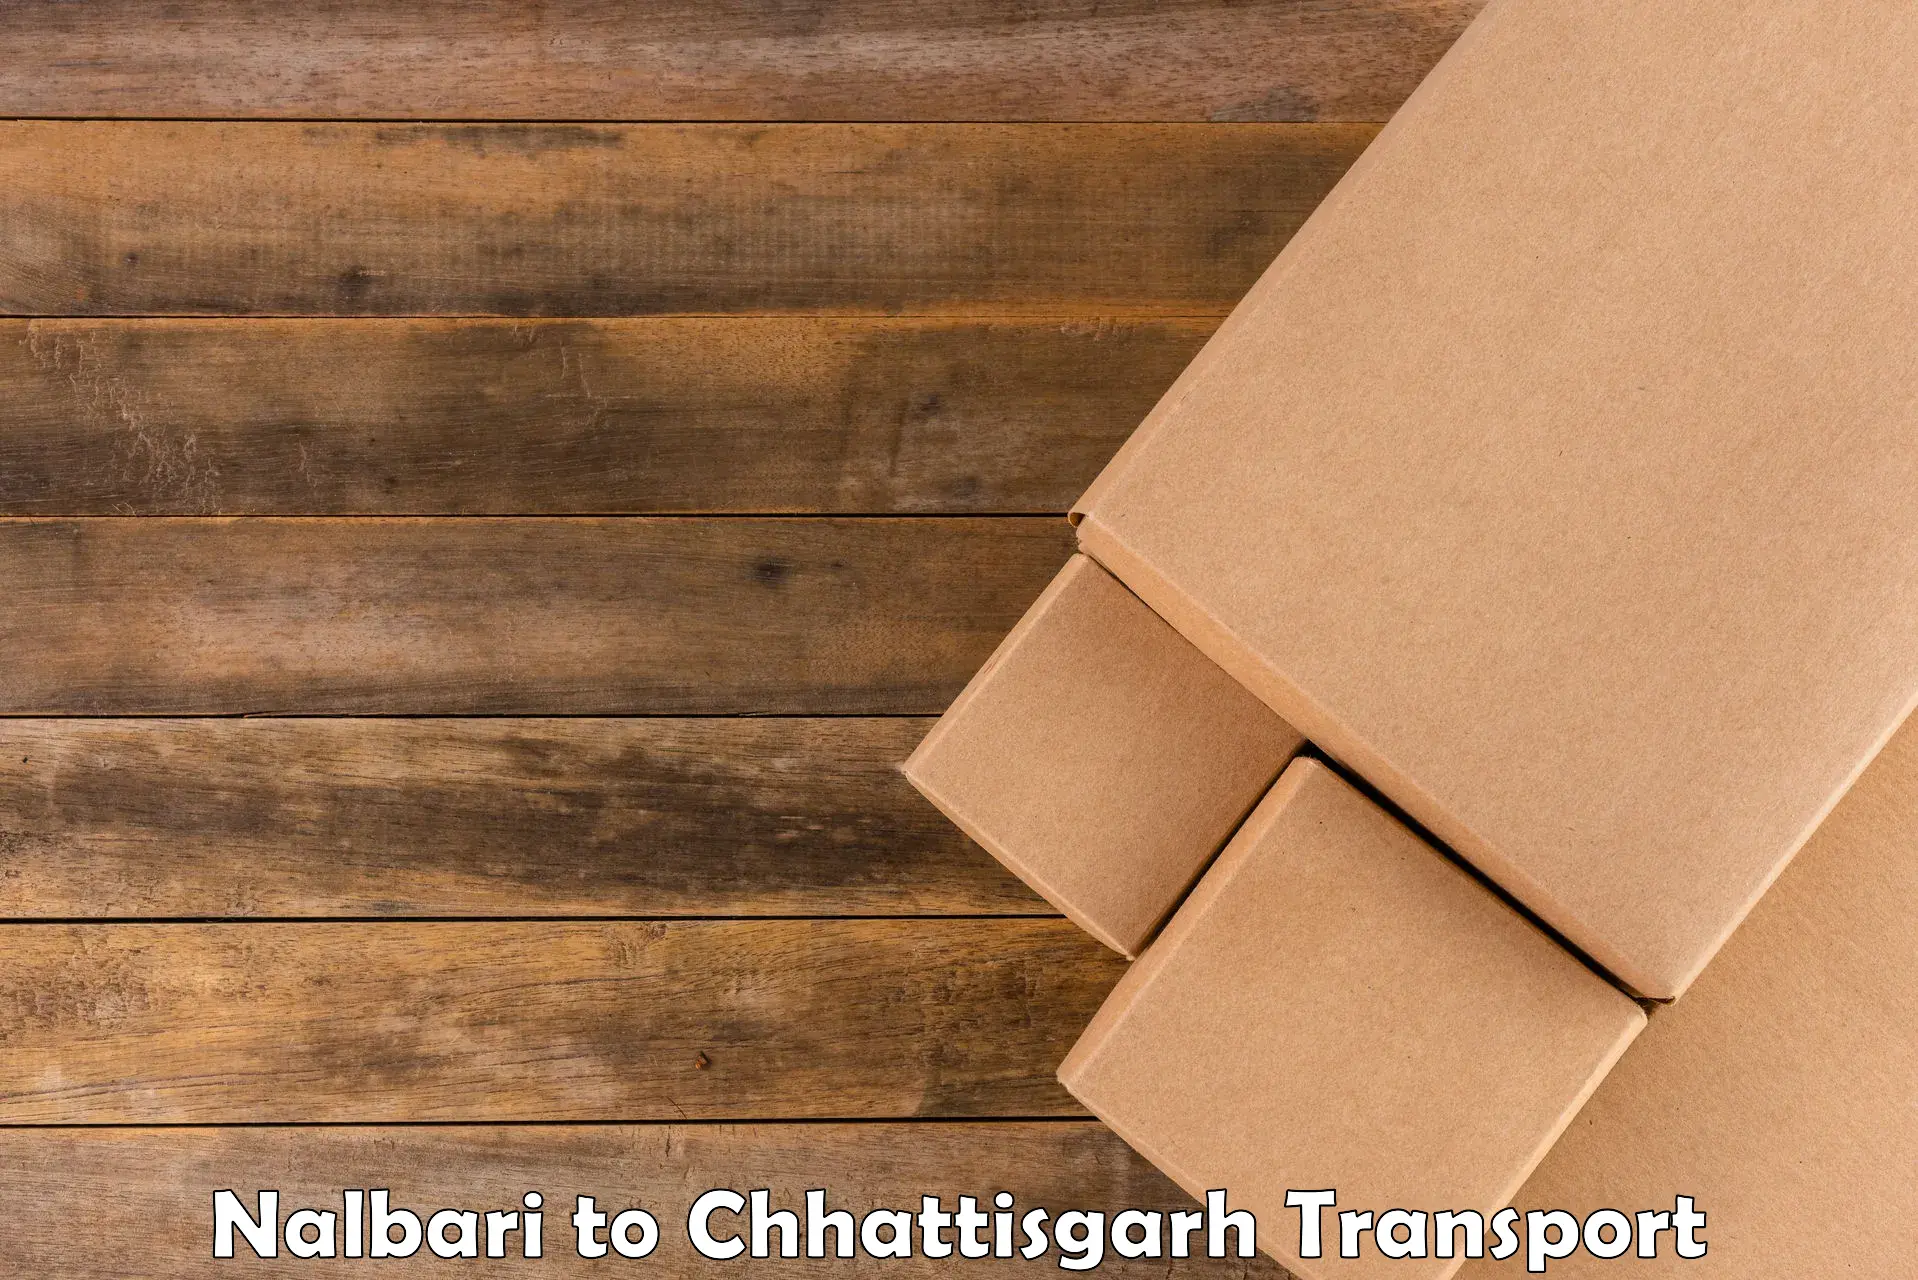 Online transport Nalbari to bagbahra